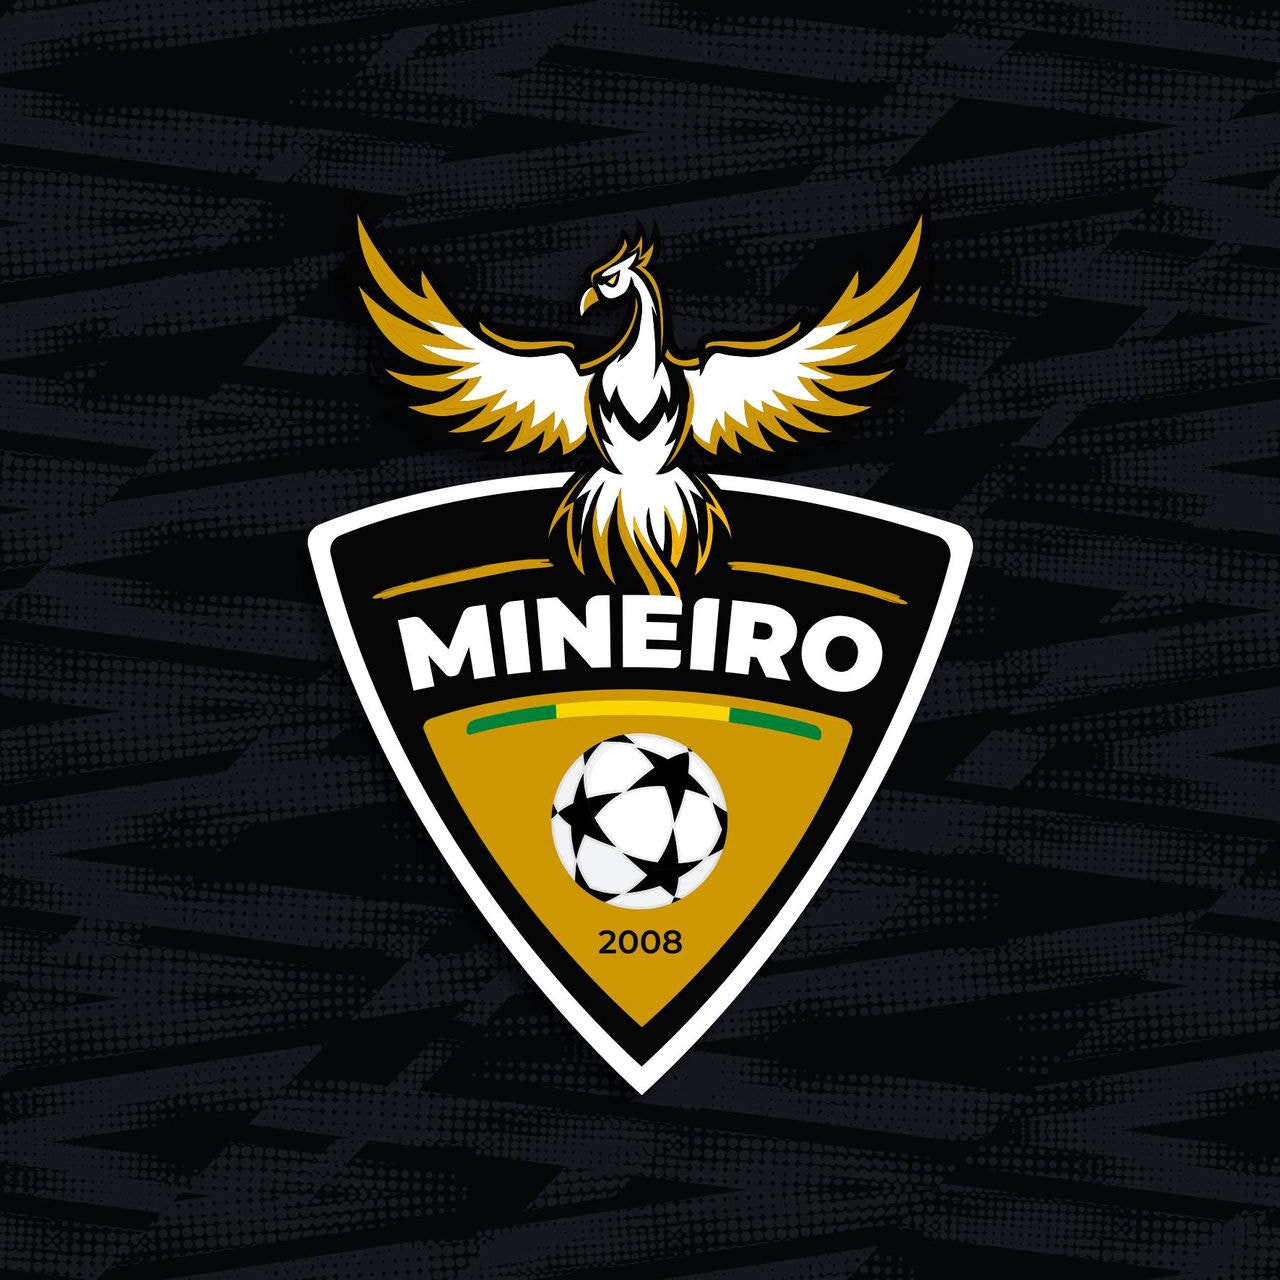 O Atlético Mineiro do Equador apresentou um novo escudo 